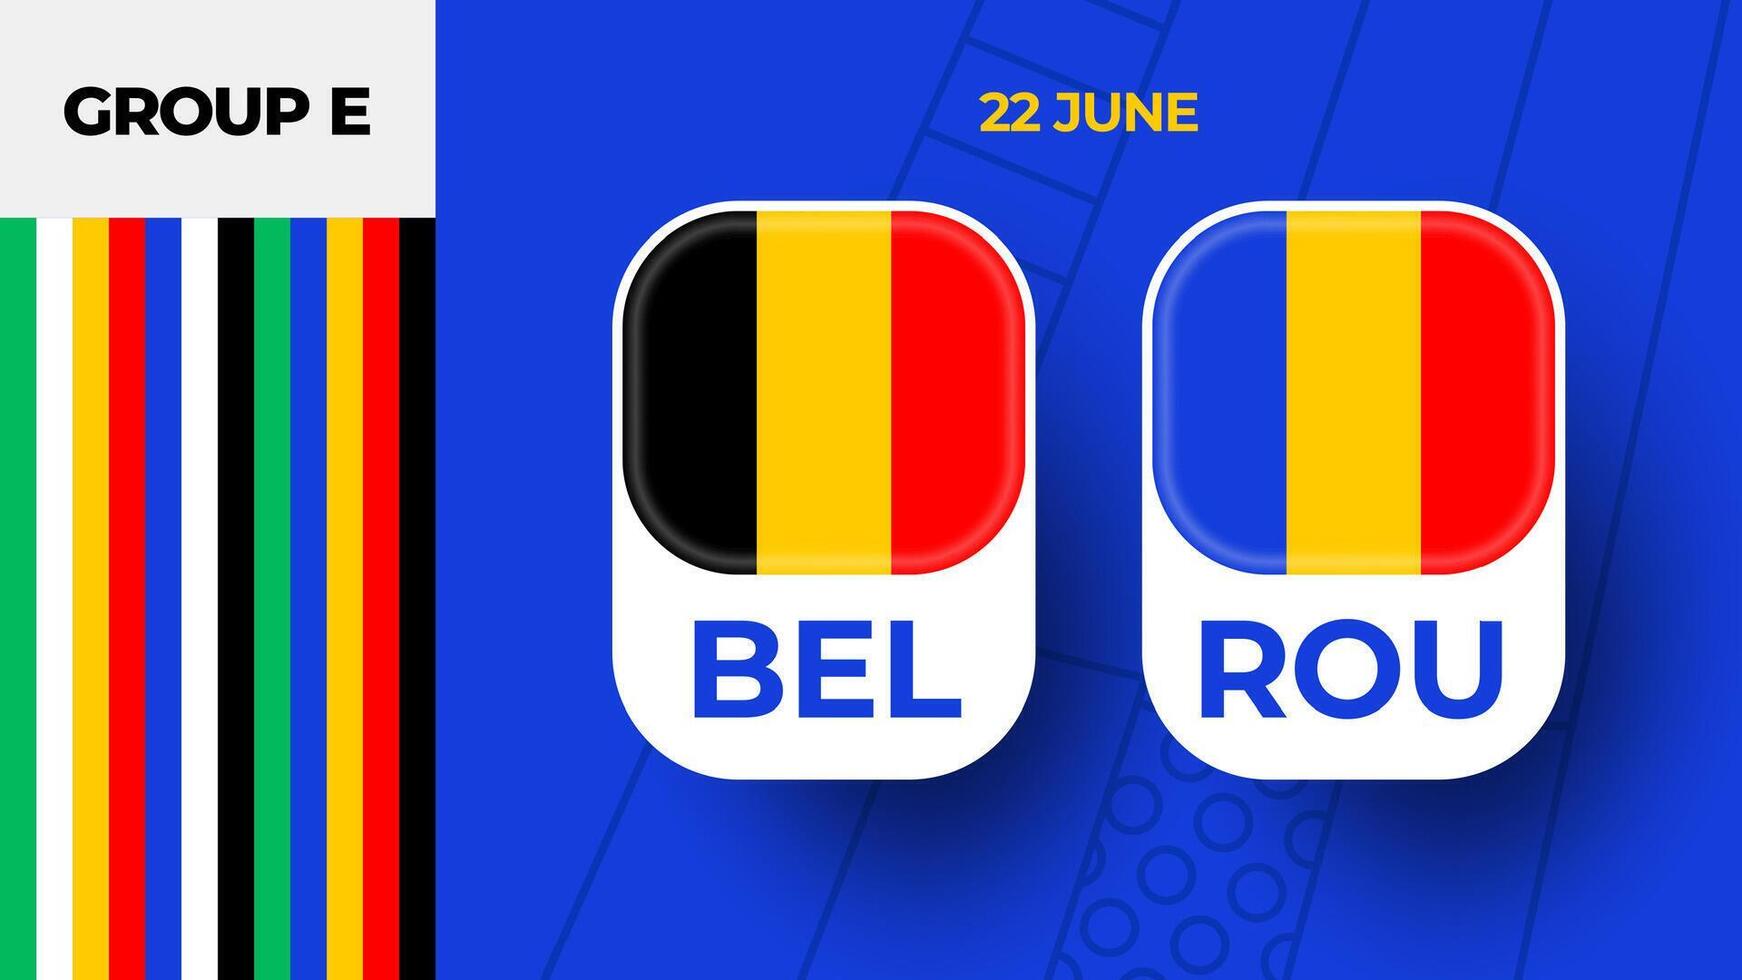 belgie vs Roemenië Amerikaans voetbal 2024 bij elkaar passen versus. 2024 groep stadium kampioenschap bij elkaar passen versus teams intro sport achtergrond, kampioenschap wedstrijd vector